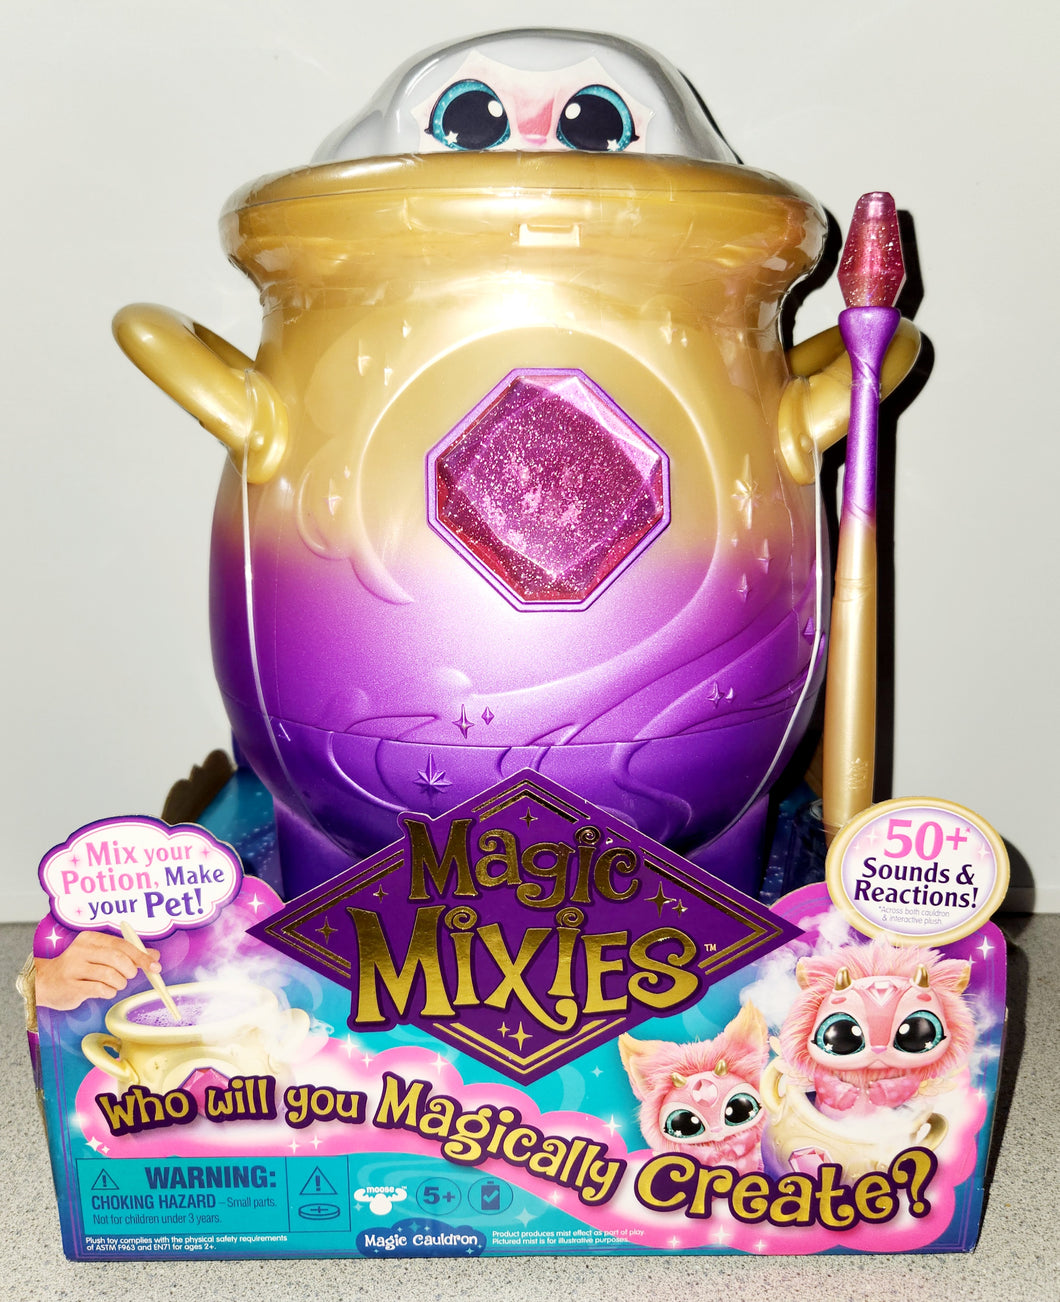 Magic Mixies Magic Cauldren Pink